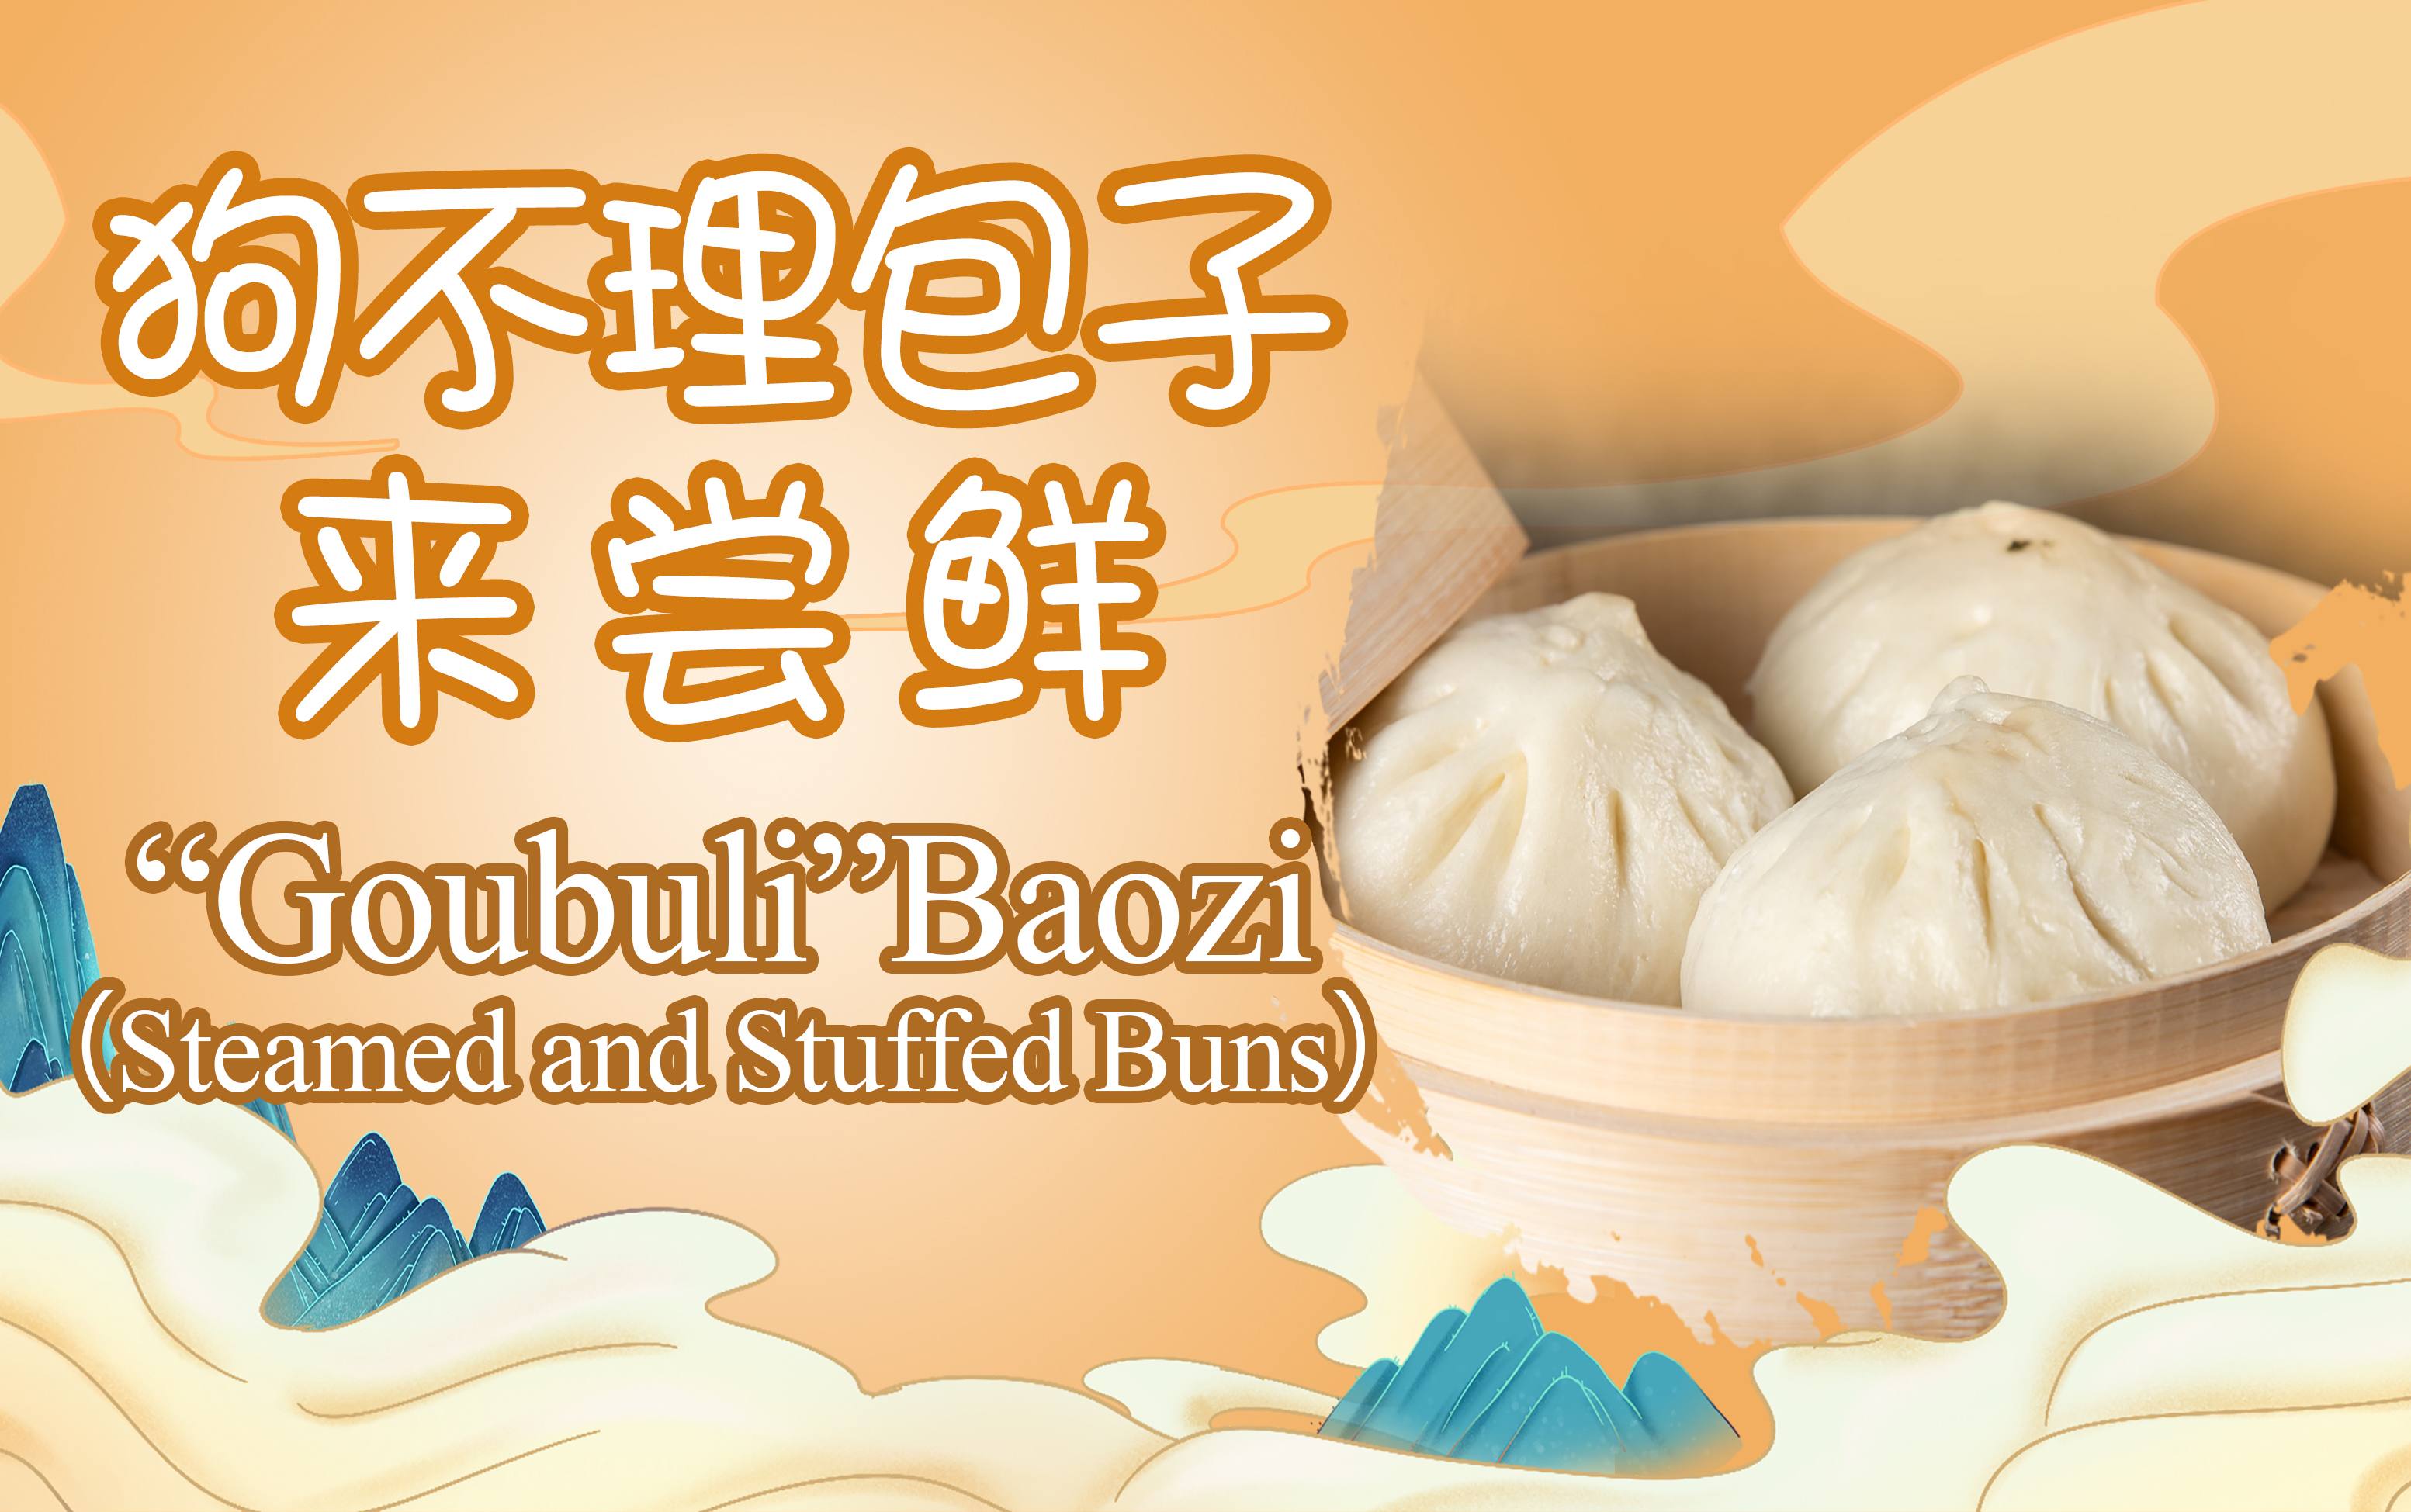 “Goubuli” Baozi（steamed and stuffed Buns）